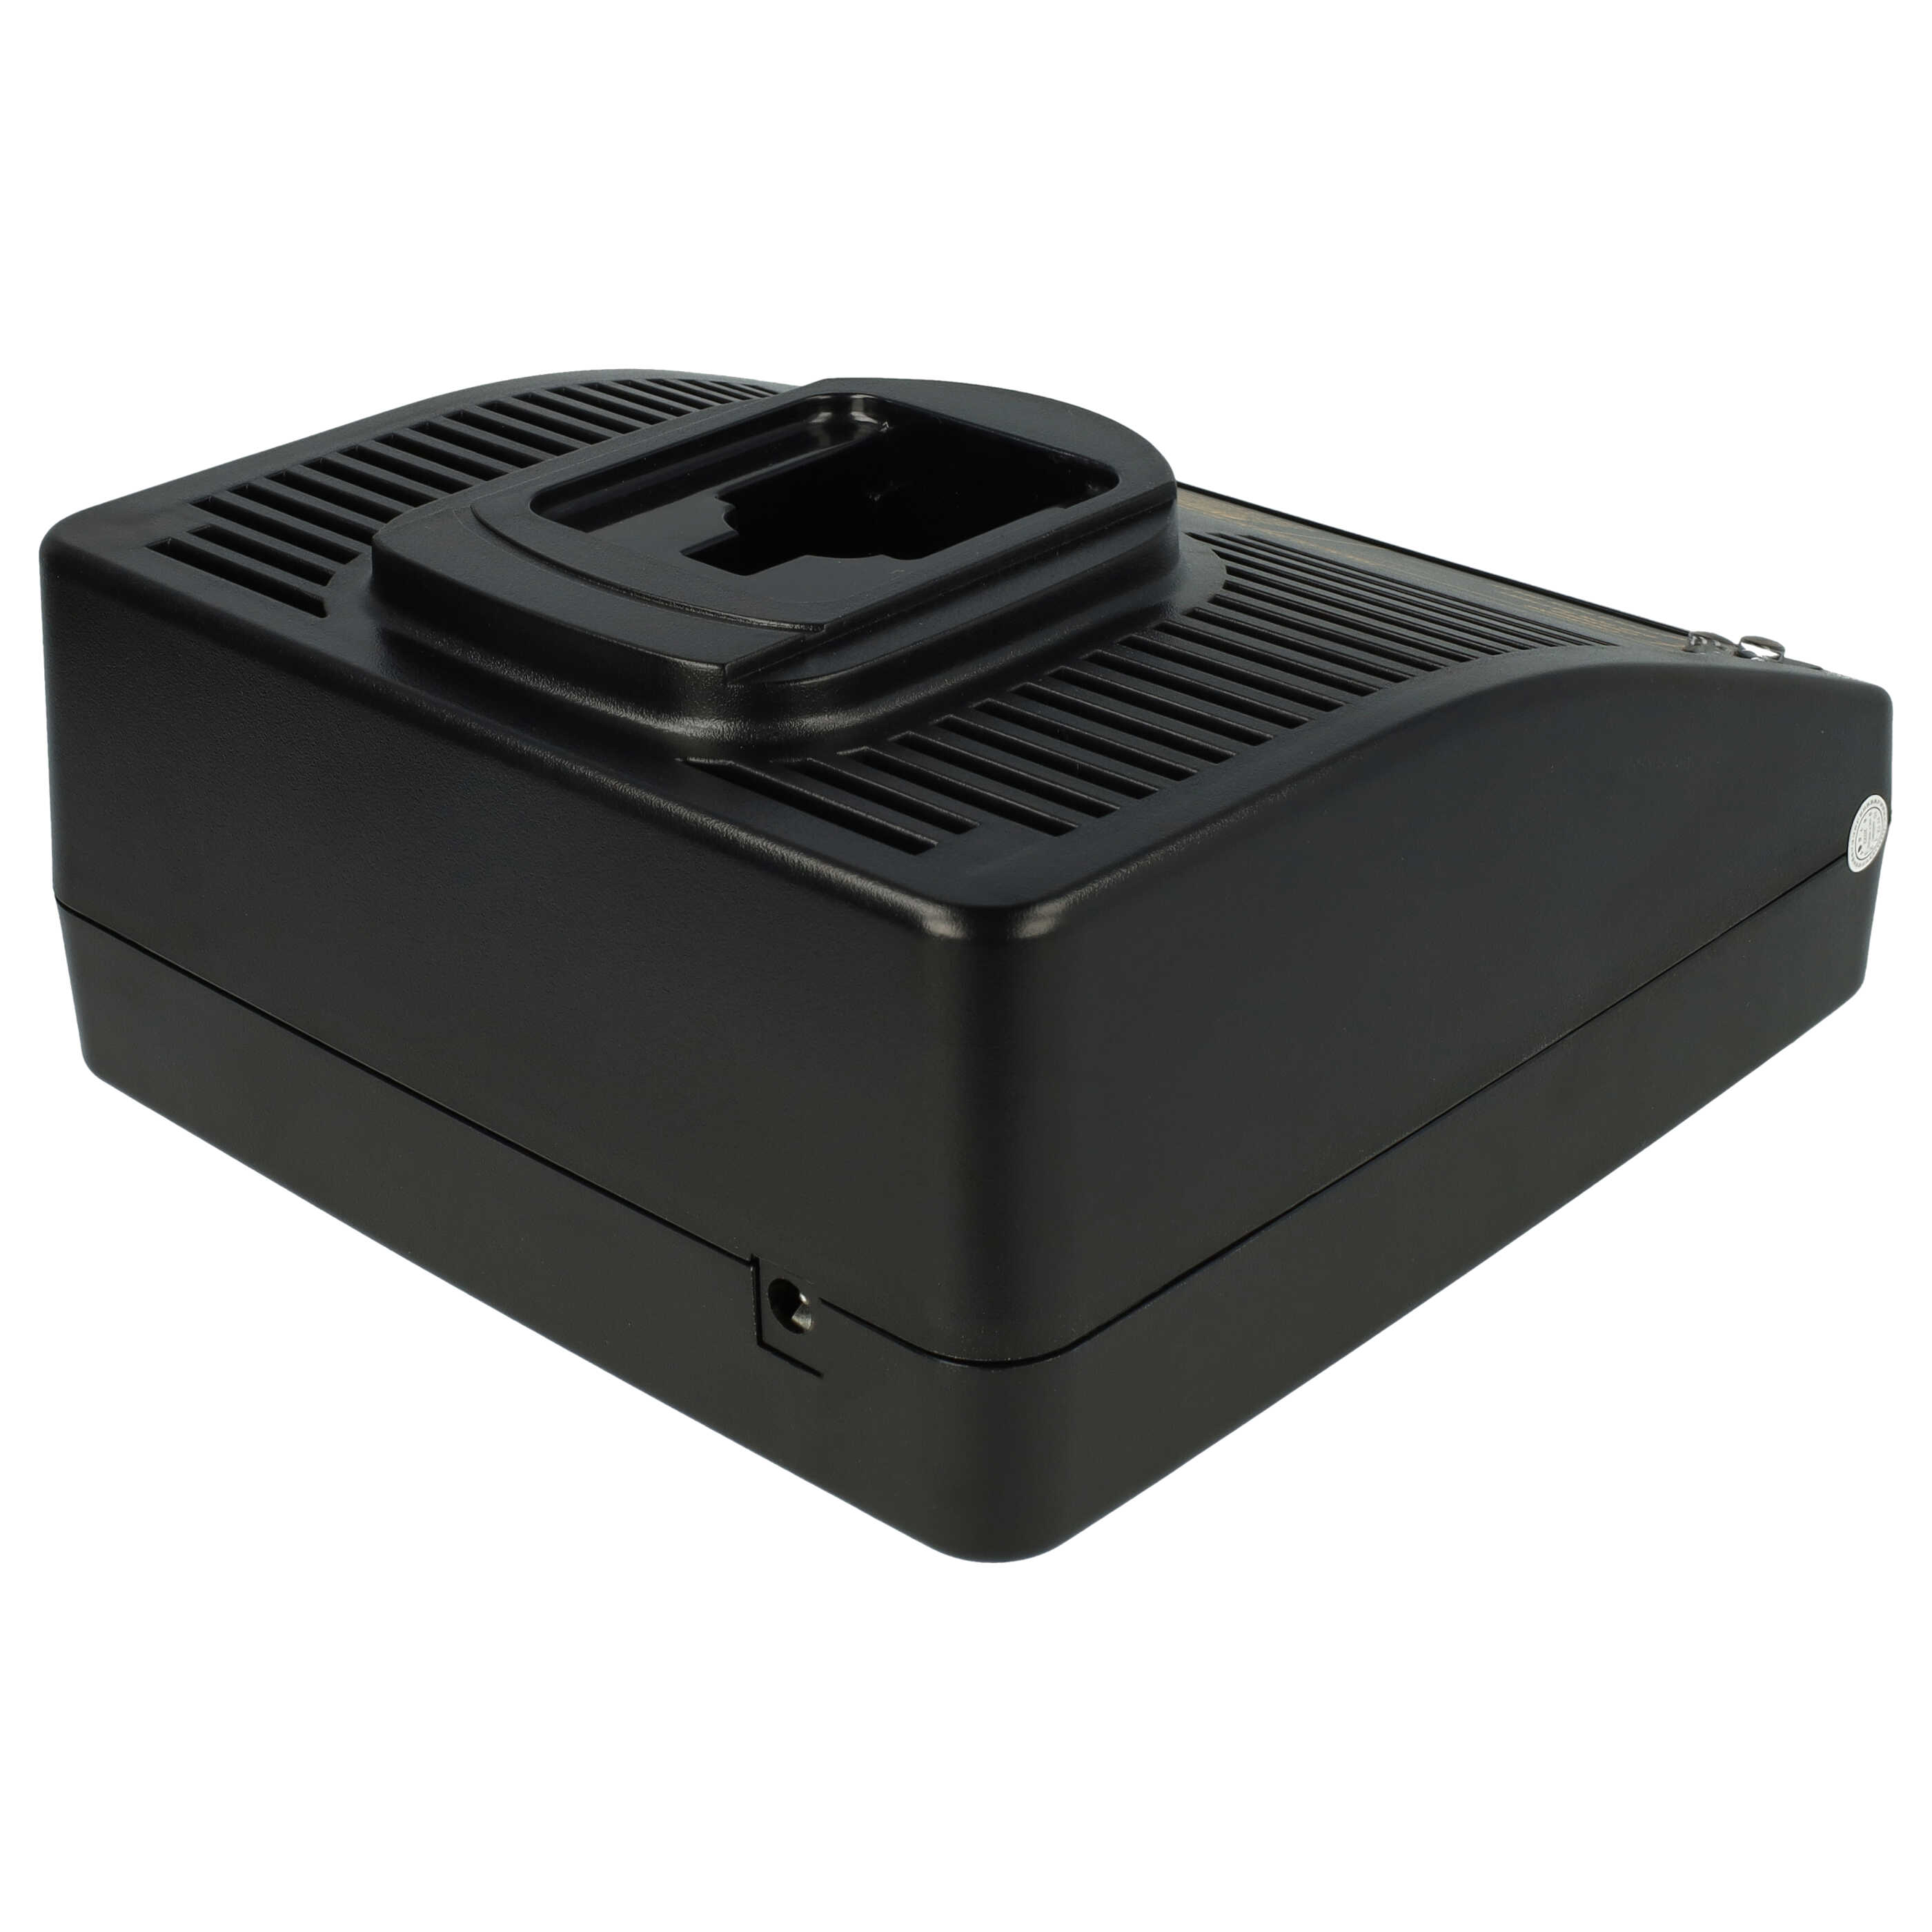 Cargador reemplaza Dewalt DE 9116, DE9116 para la batería de tus herramientas Roller - 7,2 - 18 V / 1,5 A